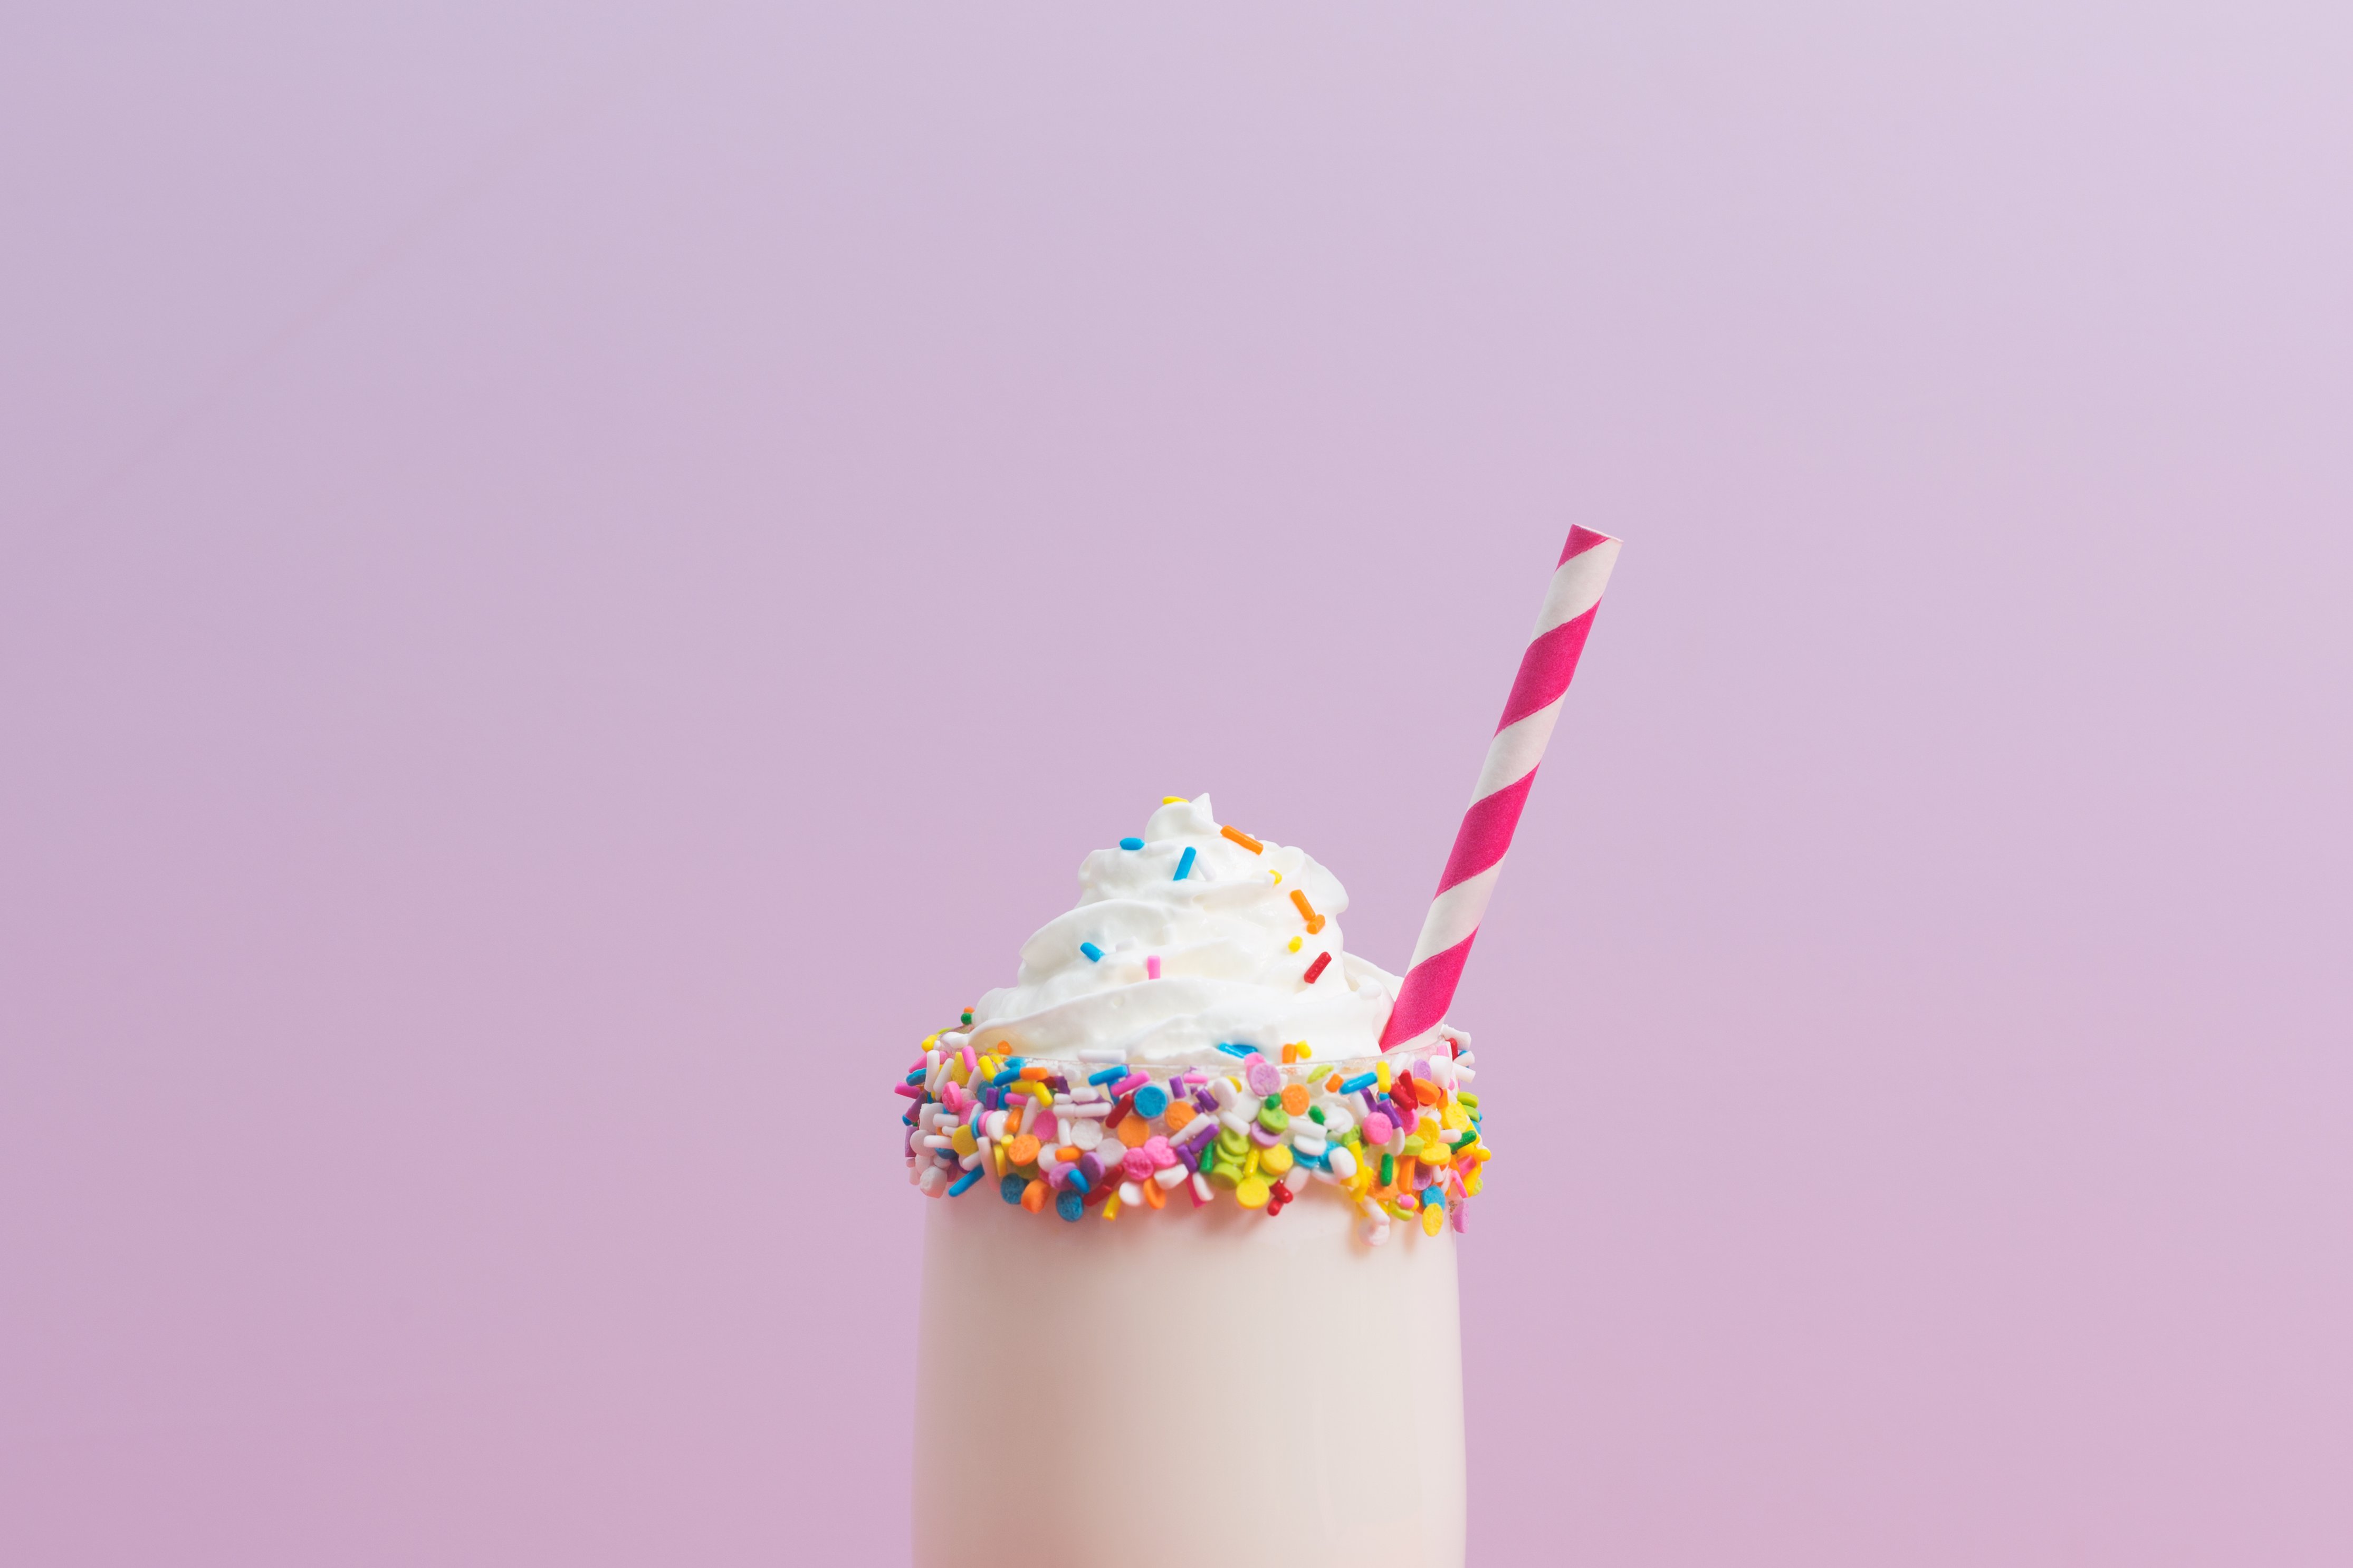 Optimize Images milkshake original